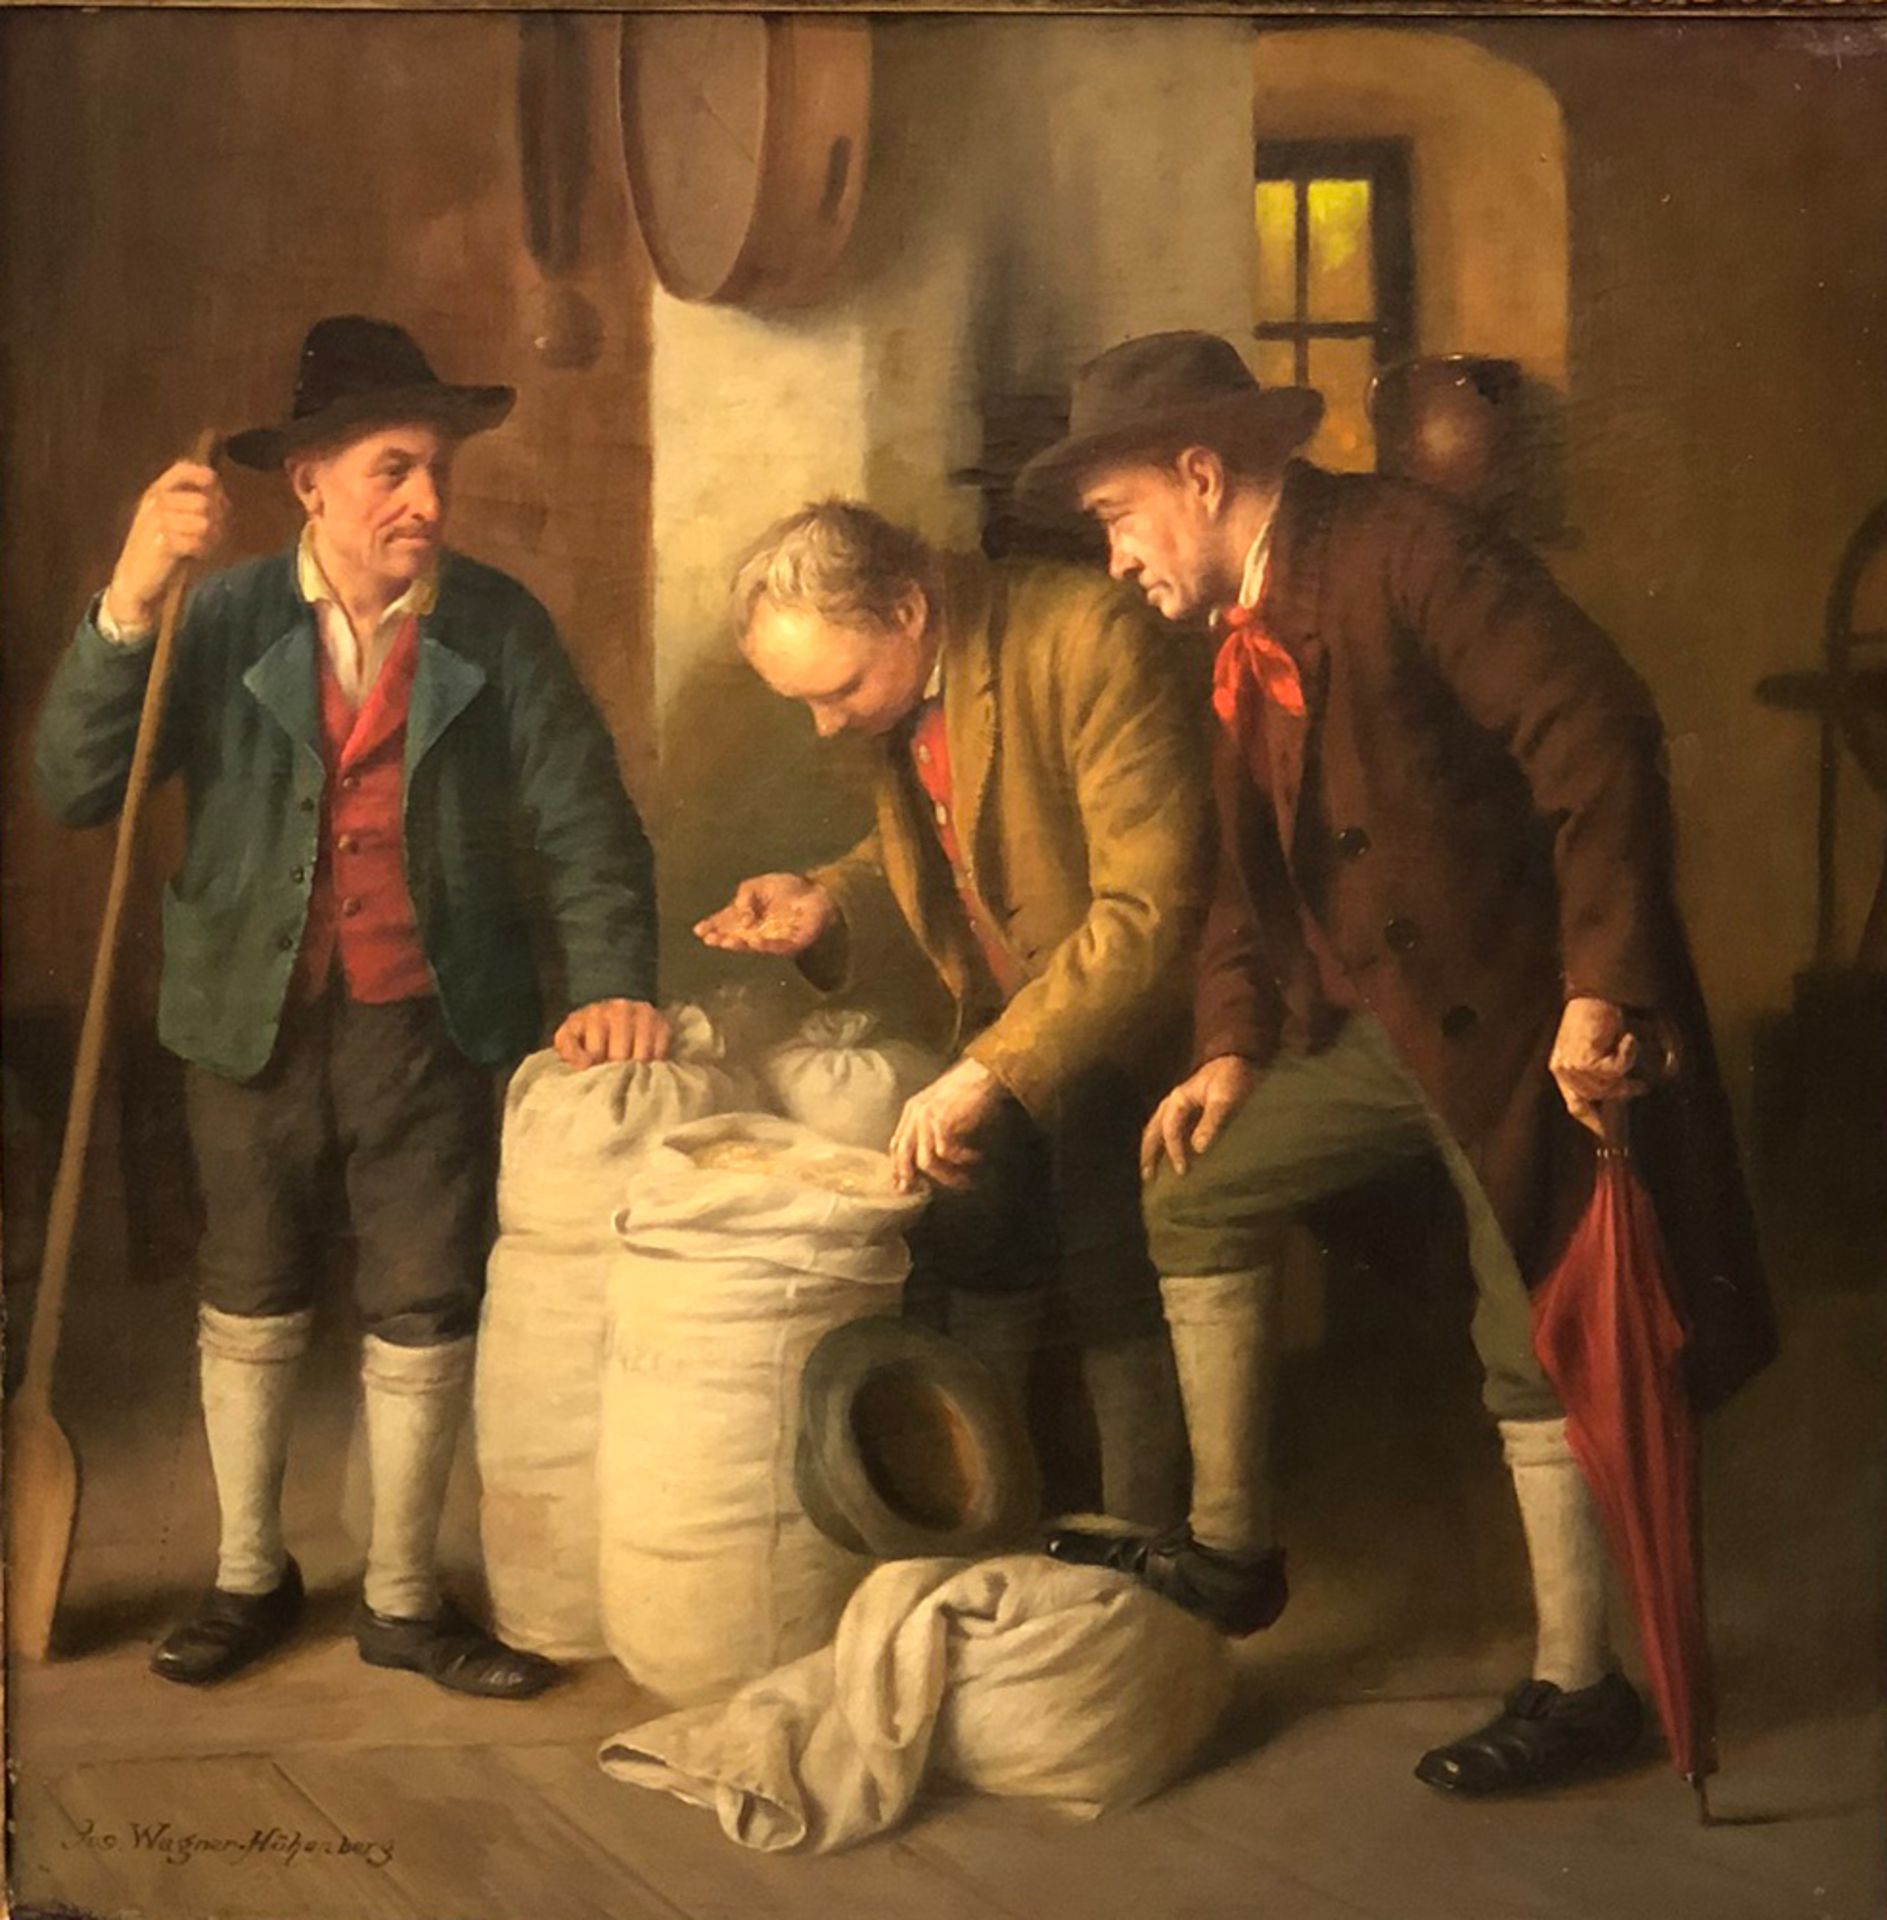 Josef WAGNER-HÖHENBERG (1870 - 1939). Getreidehändler.61 cm x 61 cm. Gemälde. Öl auf Leinwand. Links